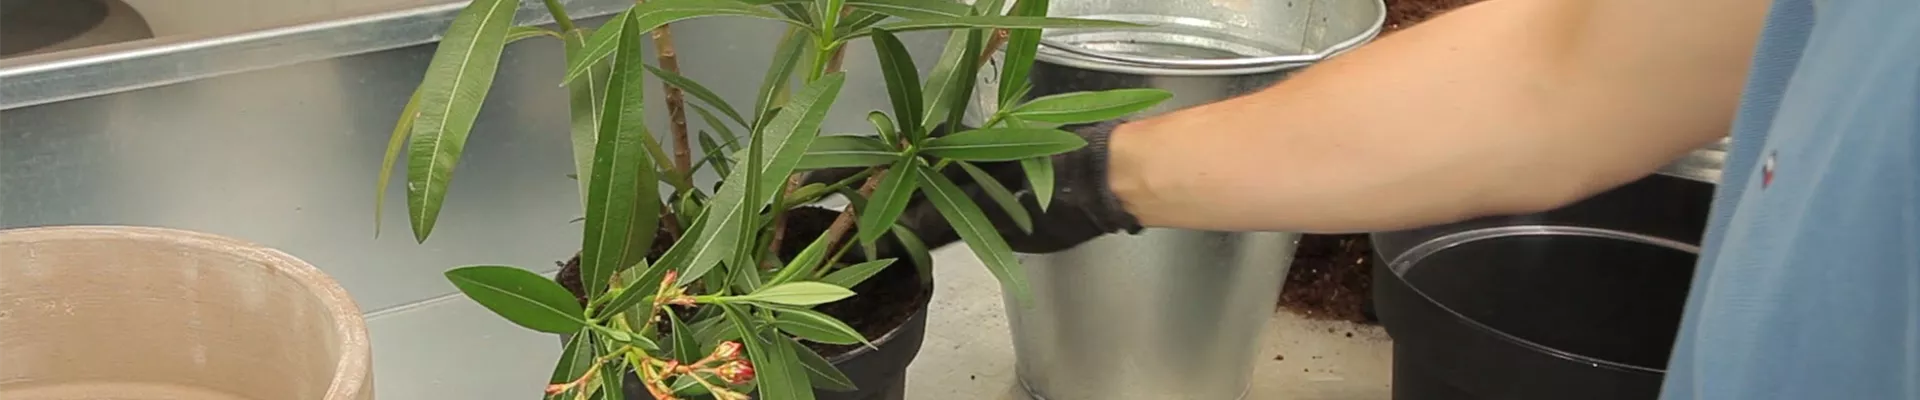 Oleander - Einpflanzen in ein Gefäß (thumbnail).jpg